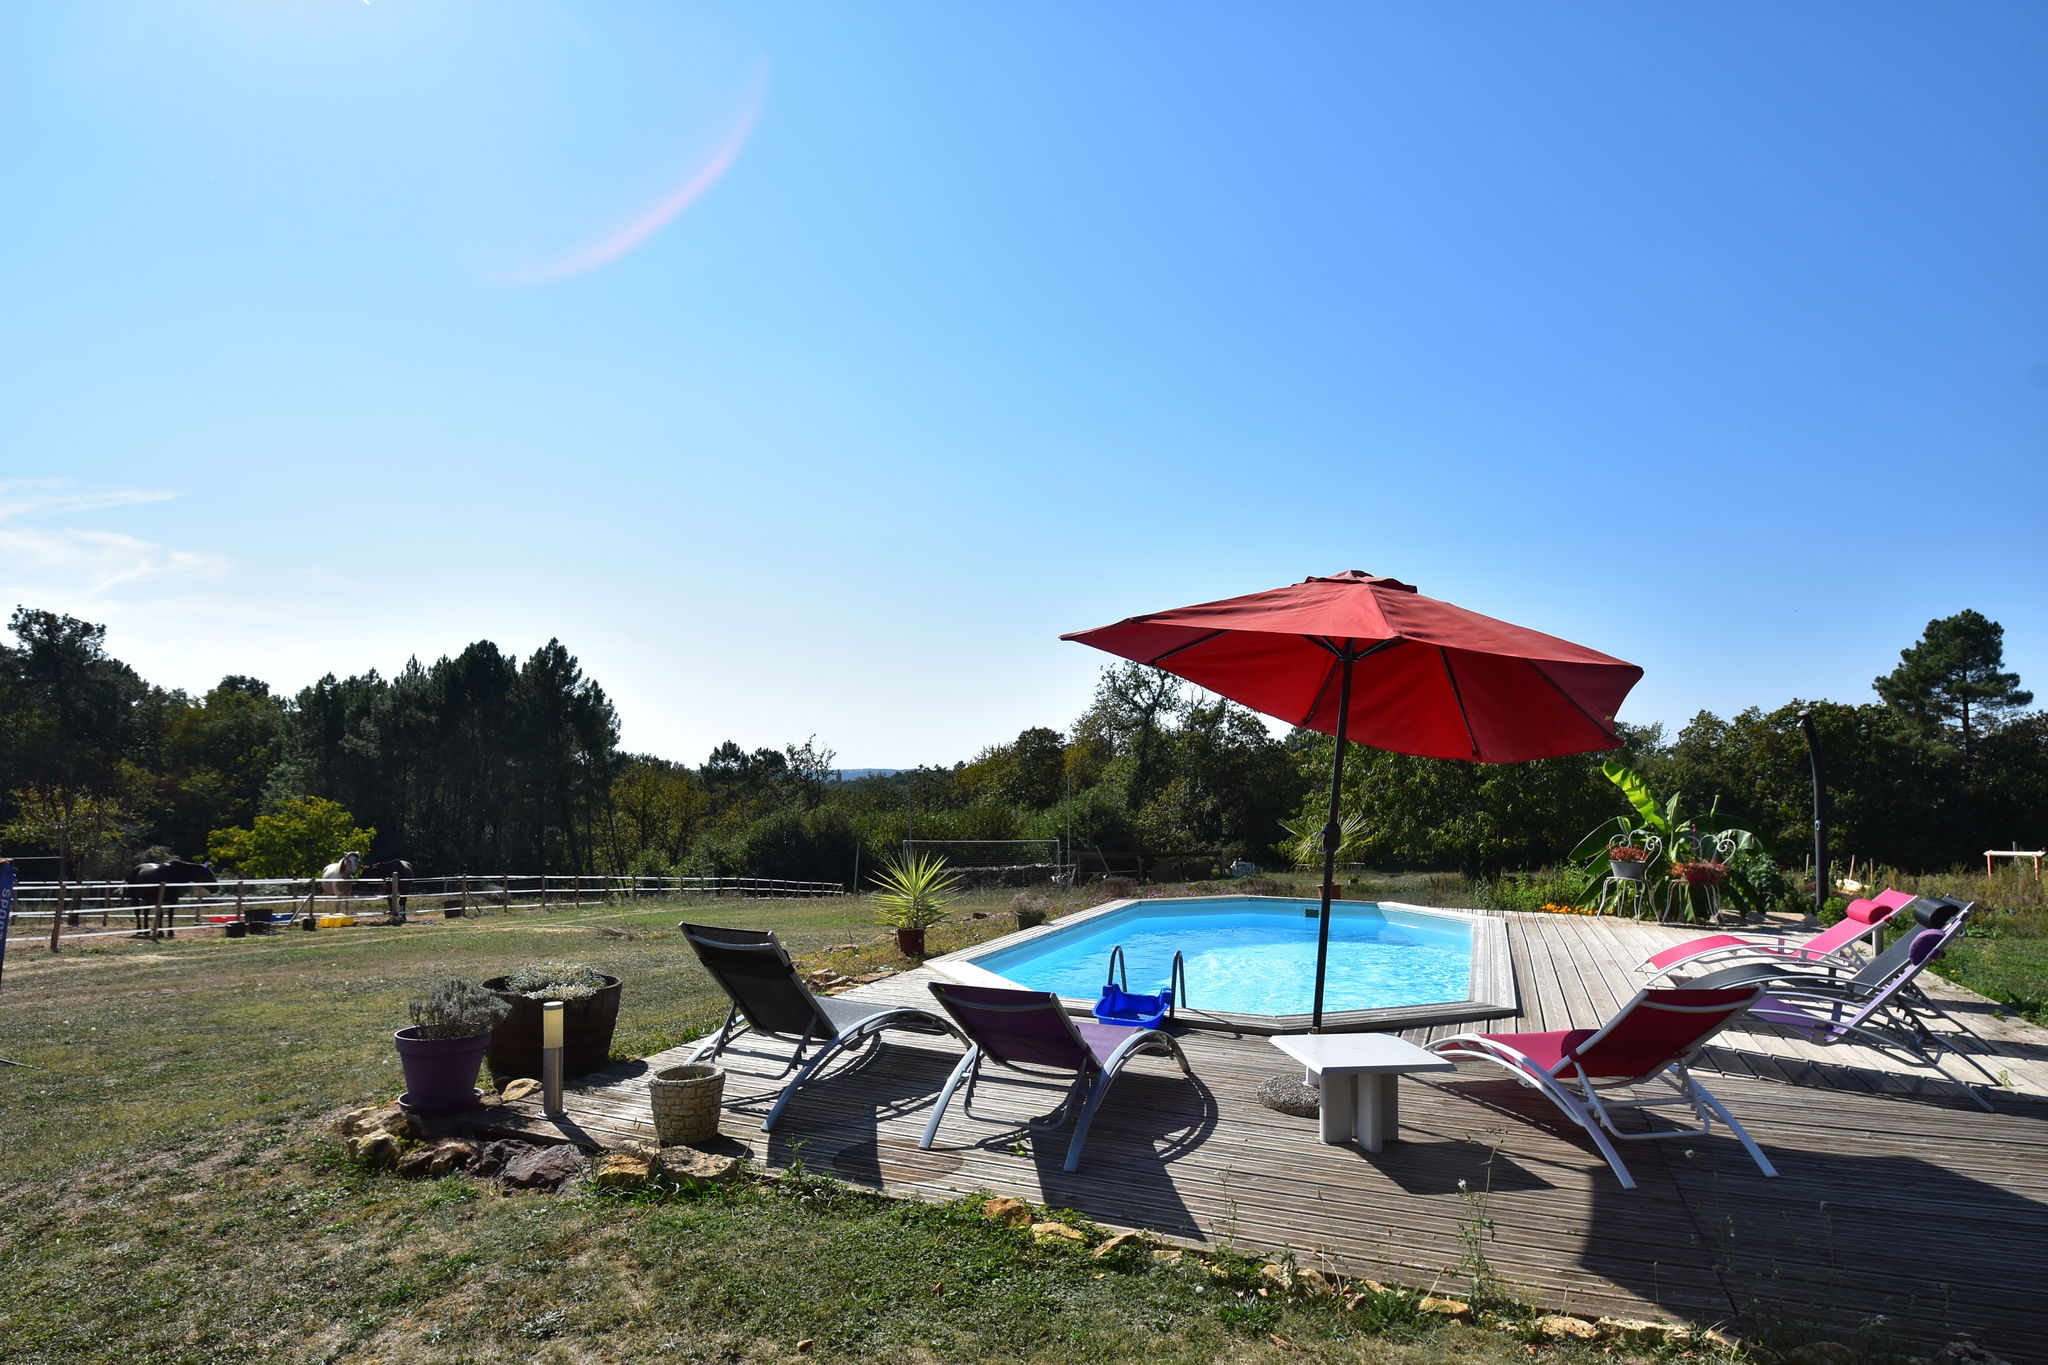 Ferienhaus in der Aquitaine mit Pool und großer Terrasse